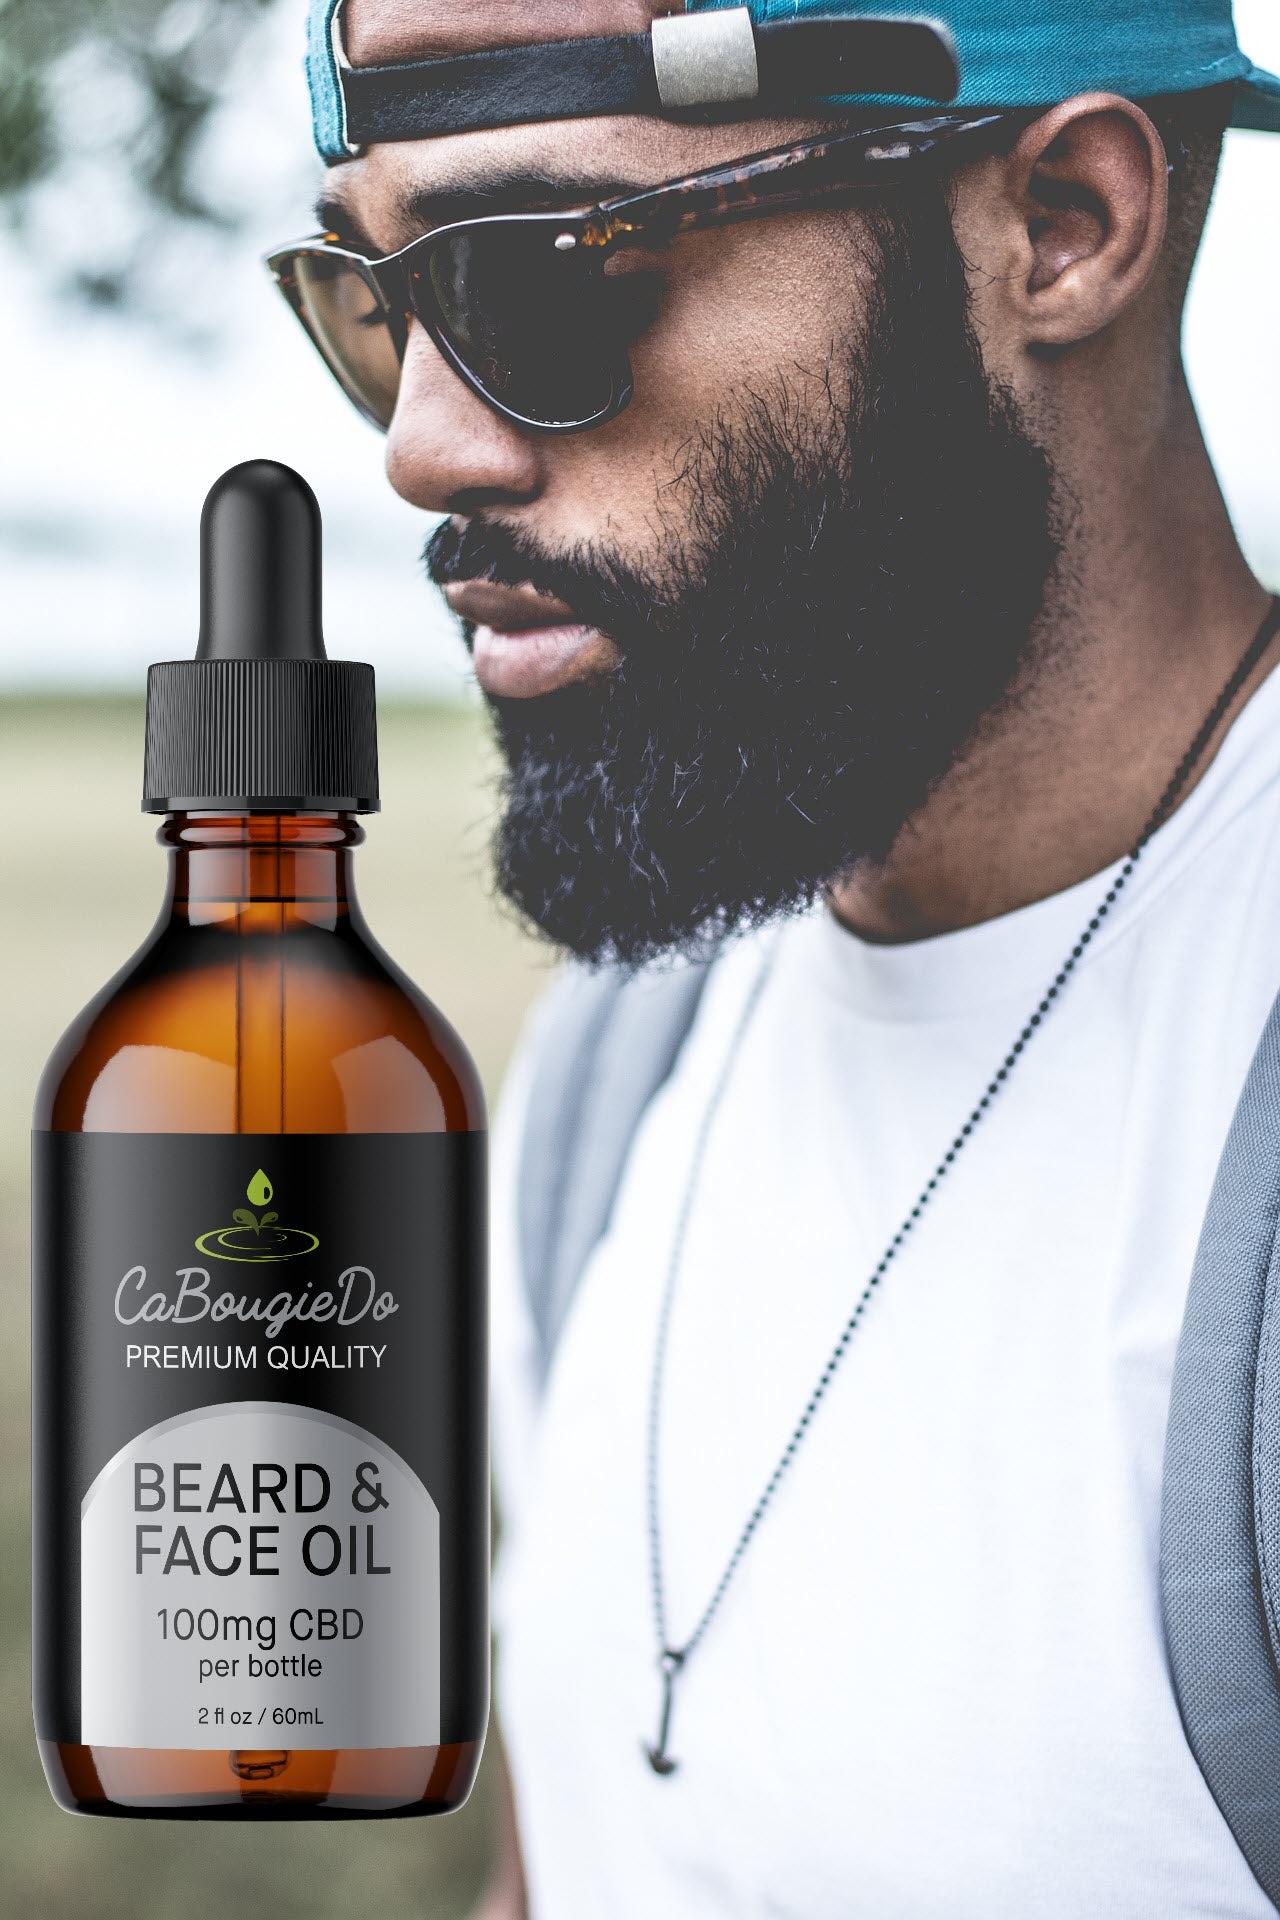 Beard & Face Oil with 100 mg CBD